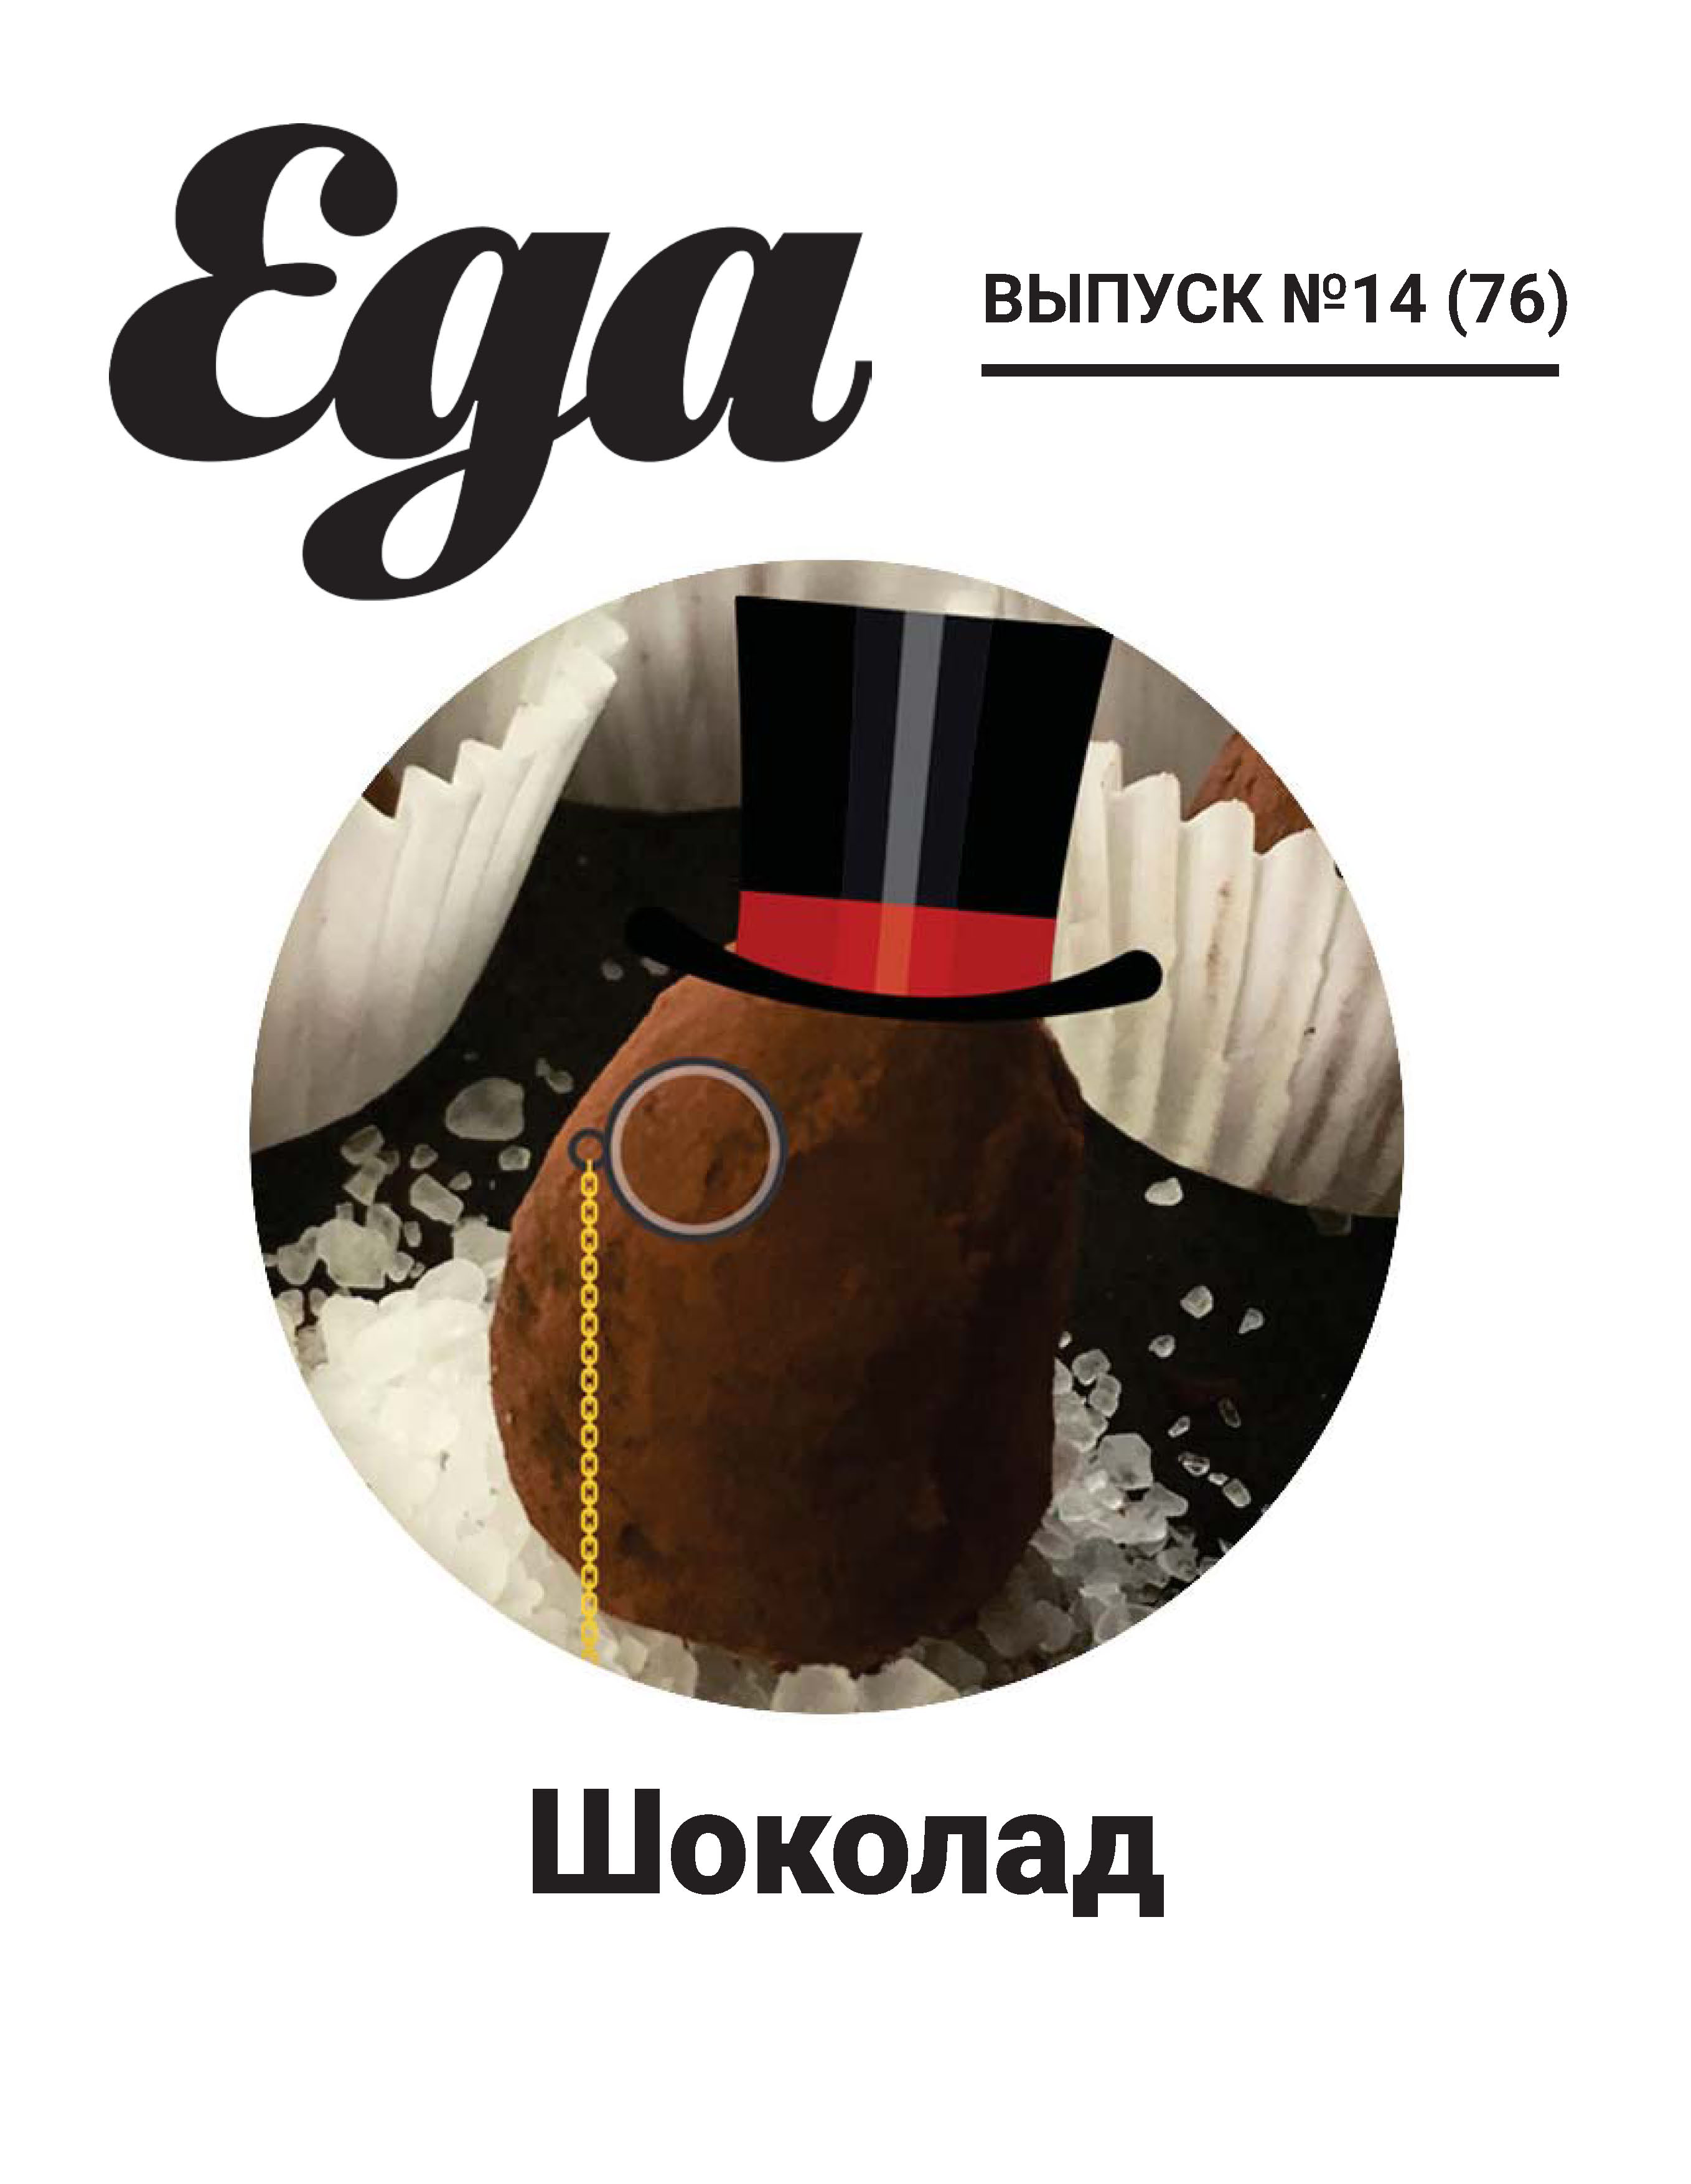 Журнал «Еда. ру» № 14